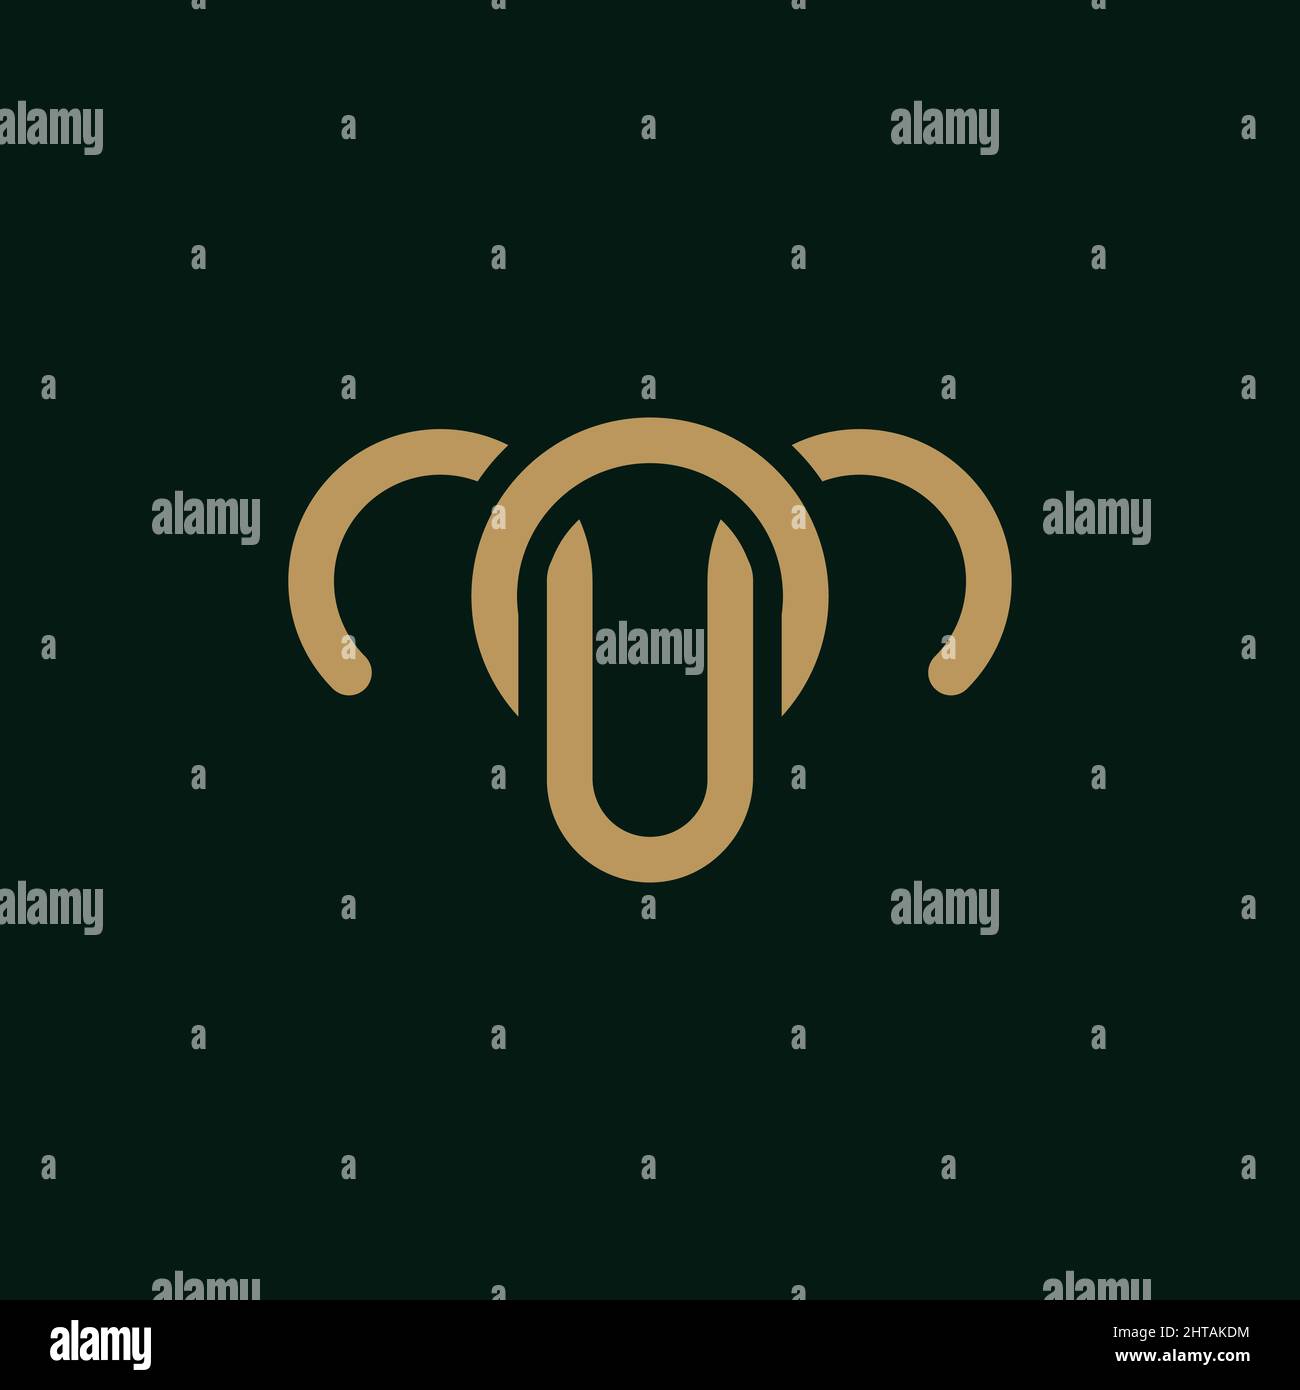 Goat logo design inspiration vector template. Wild sheep line art icon Stock Vector